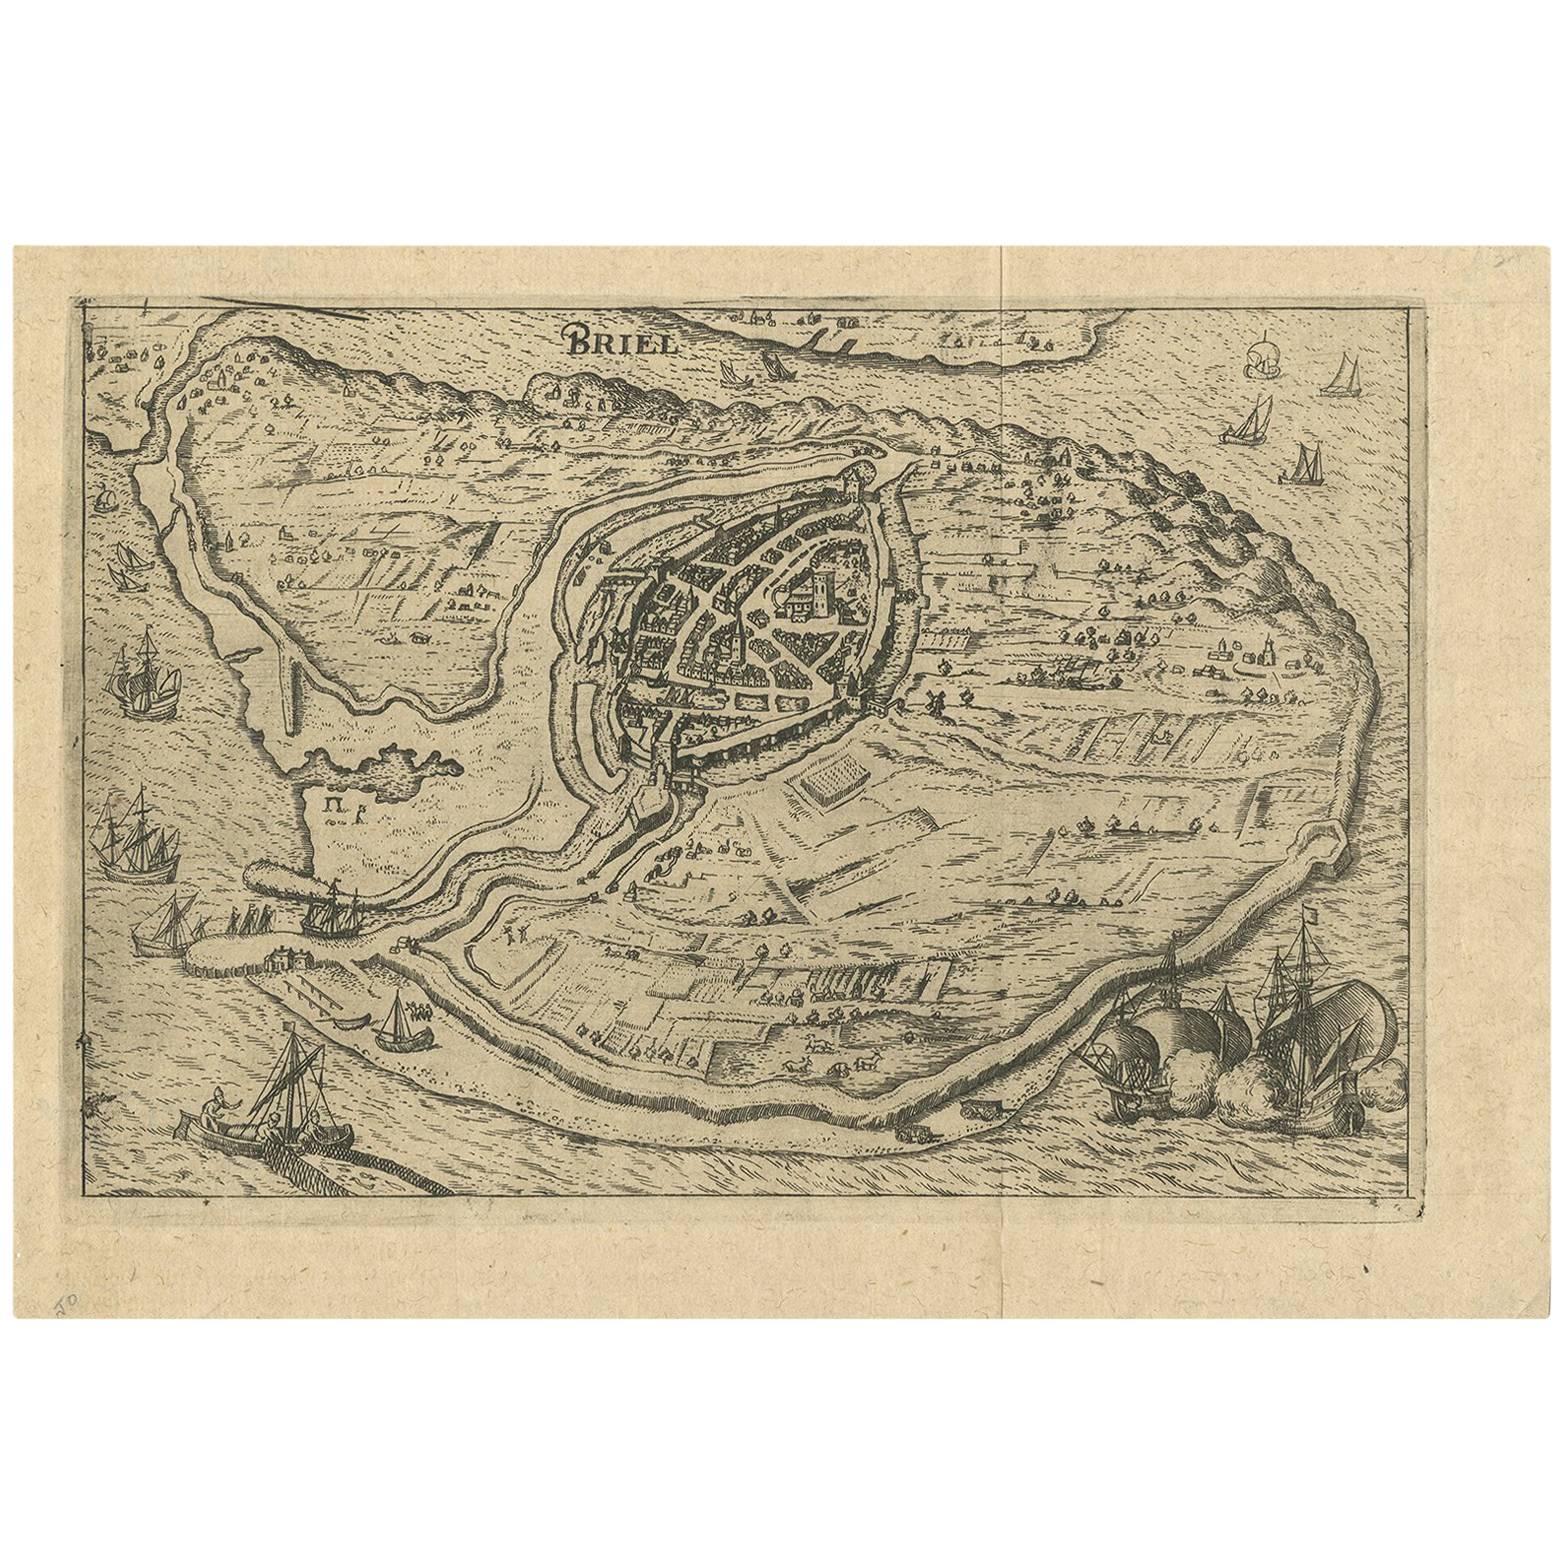 Carte ancienne de la ville de Brielle « aux Pays-Bas » par L. Guicciardini, 1625